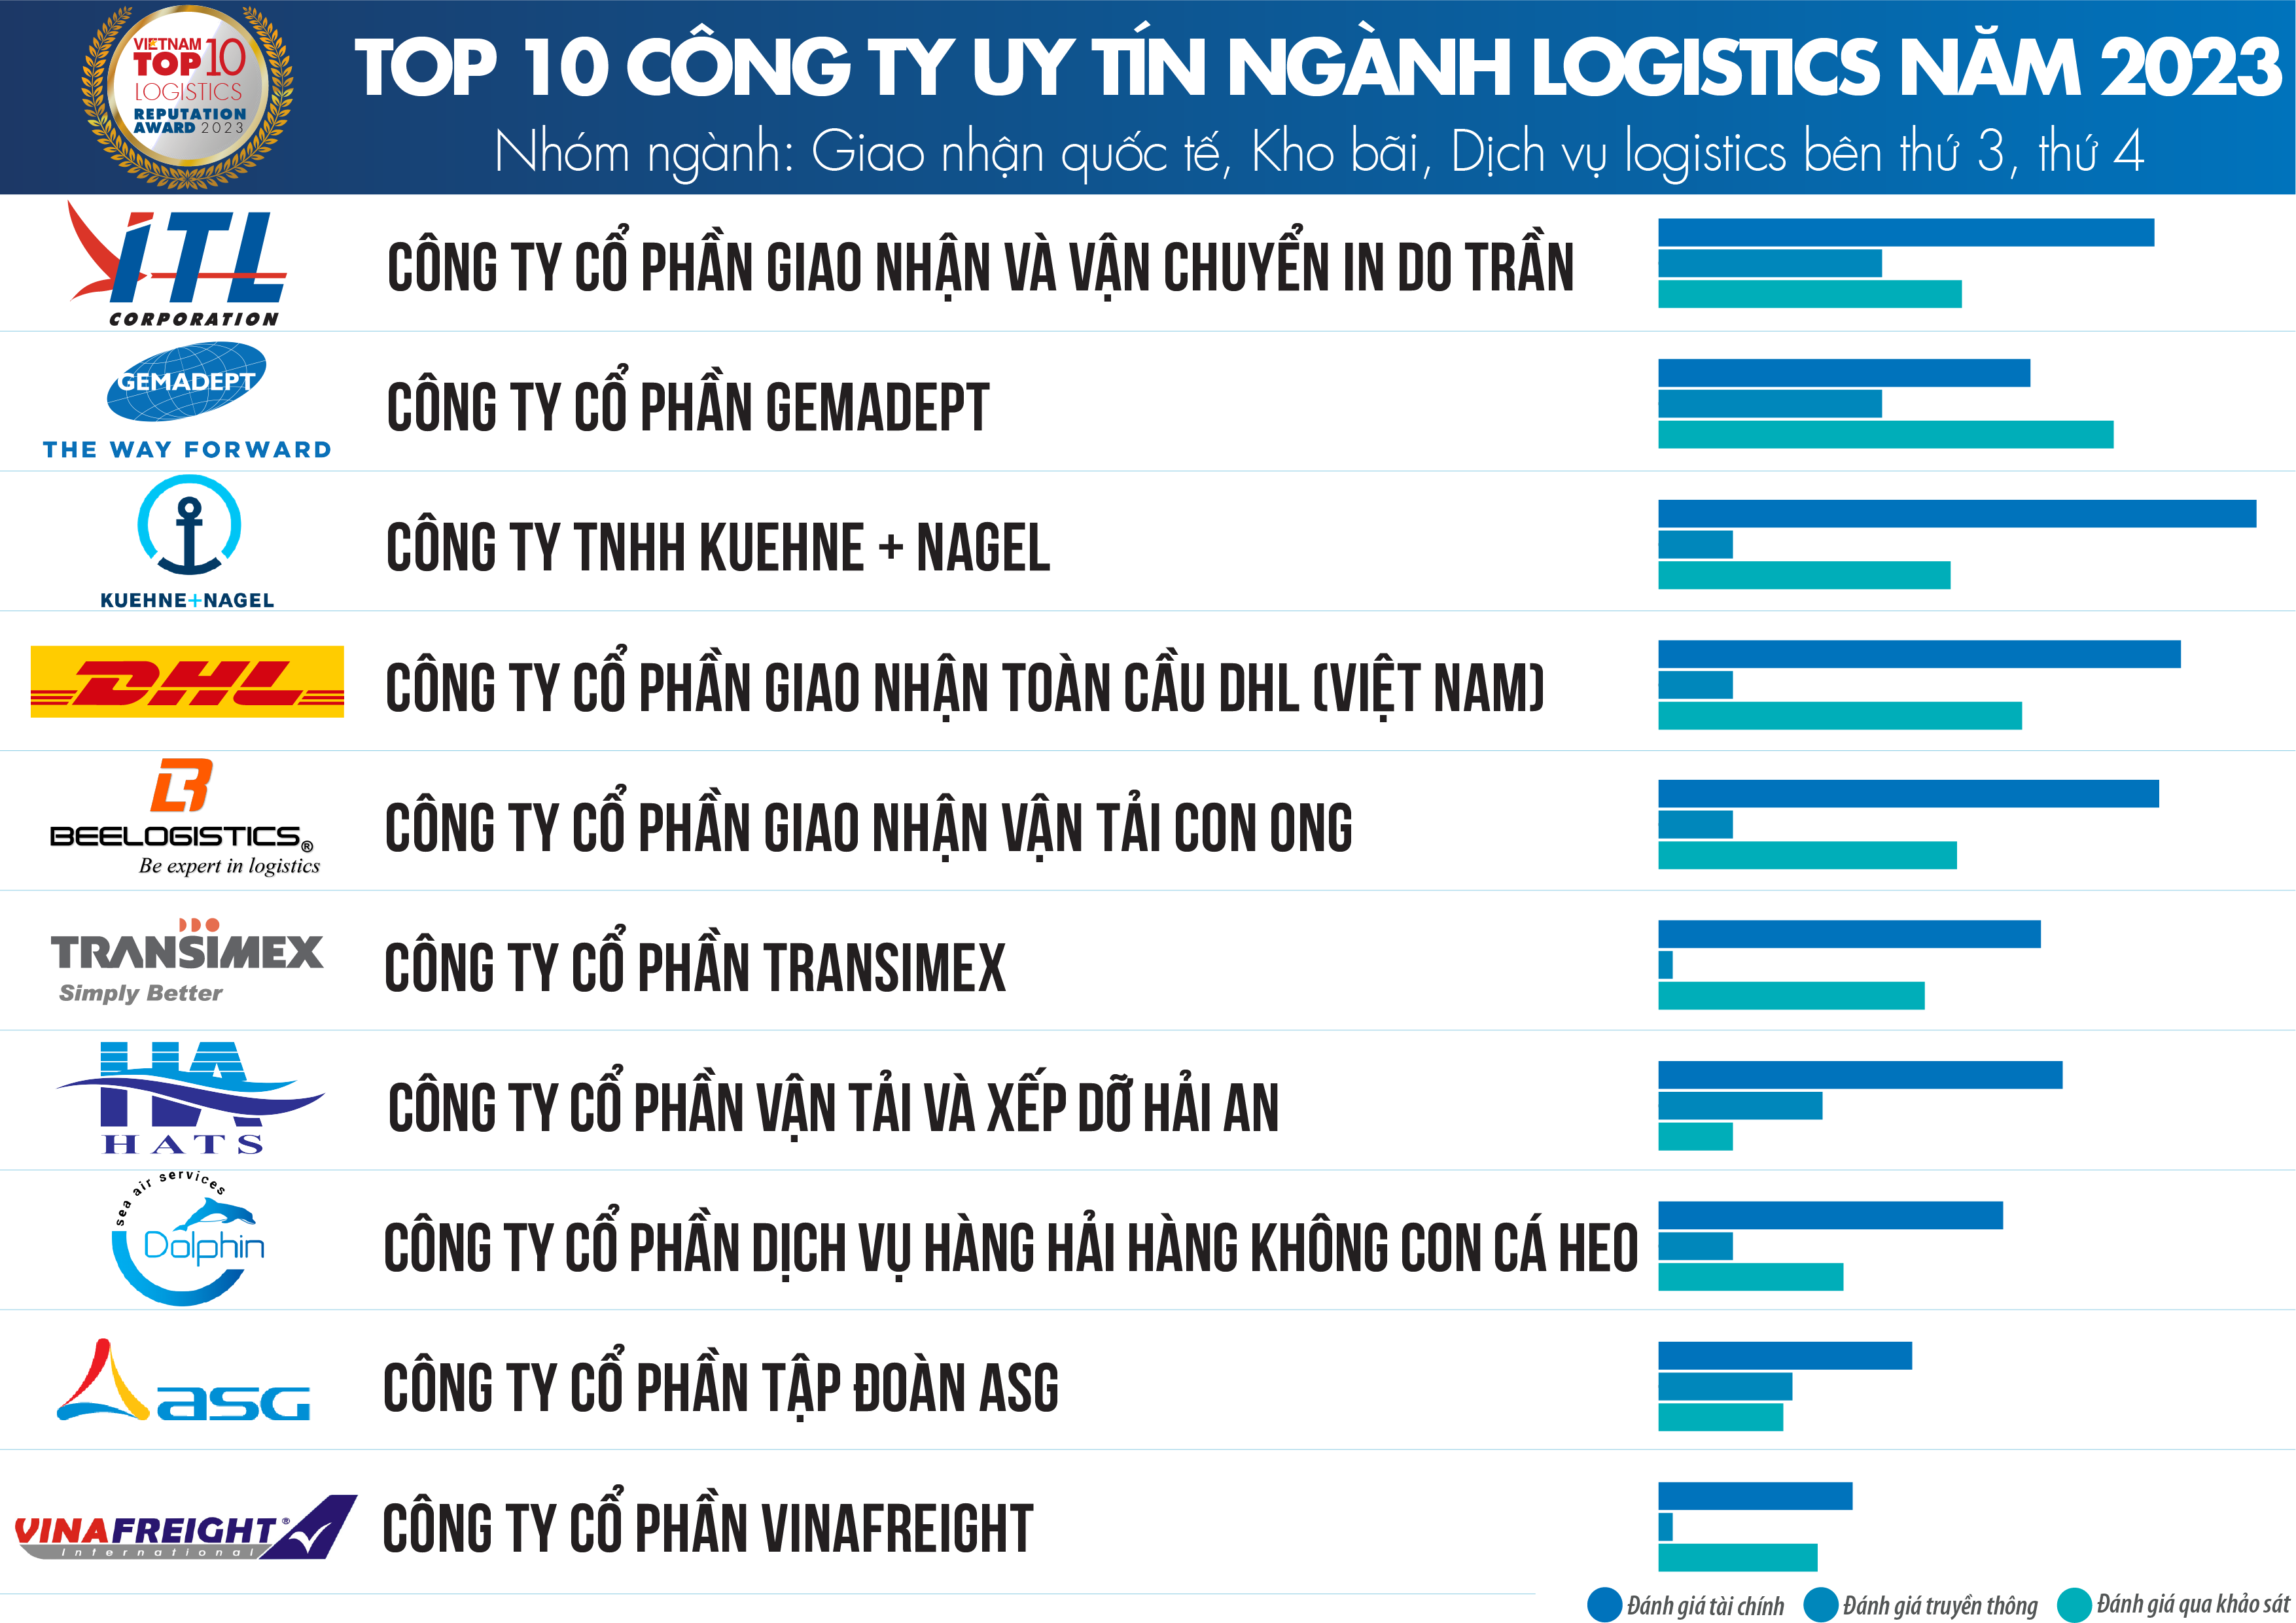 Top 10 Công ty uy tín ngành Logistics năm 2023